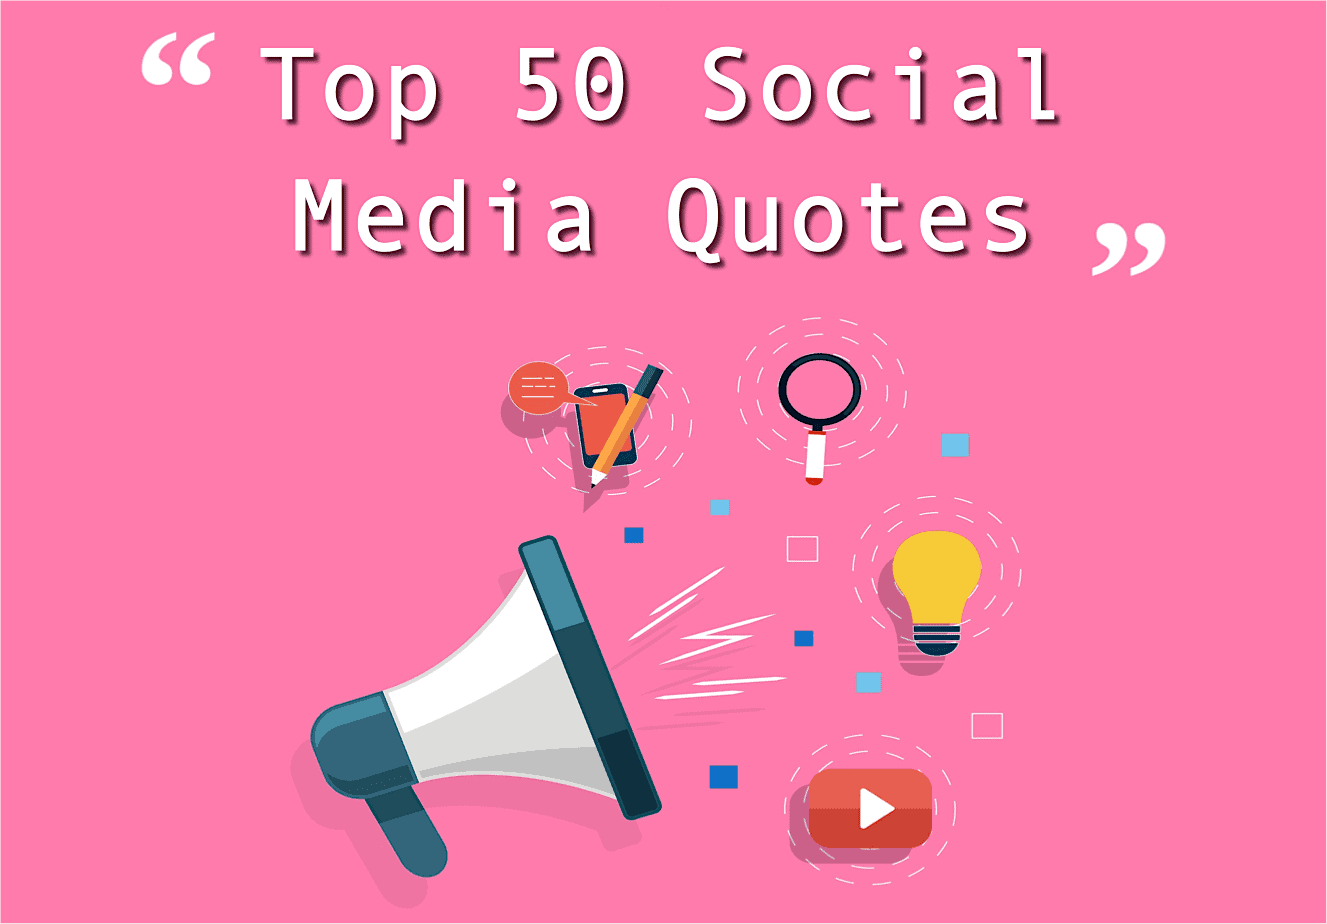 Top 50 Social Media Quotes